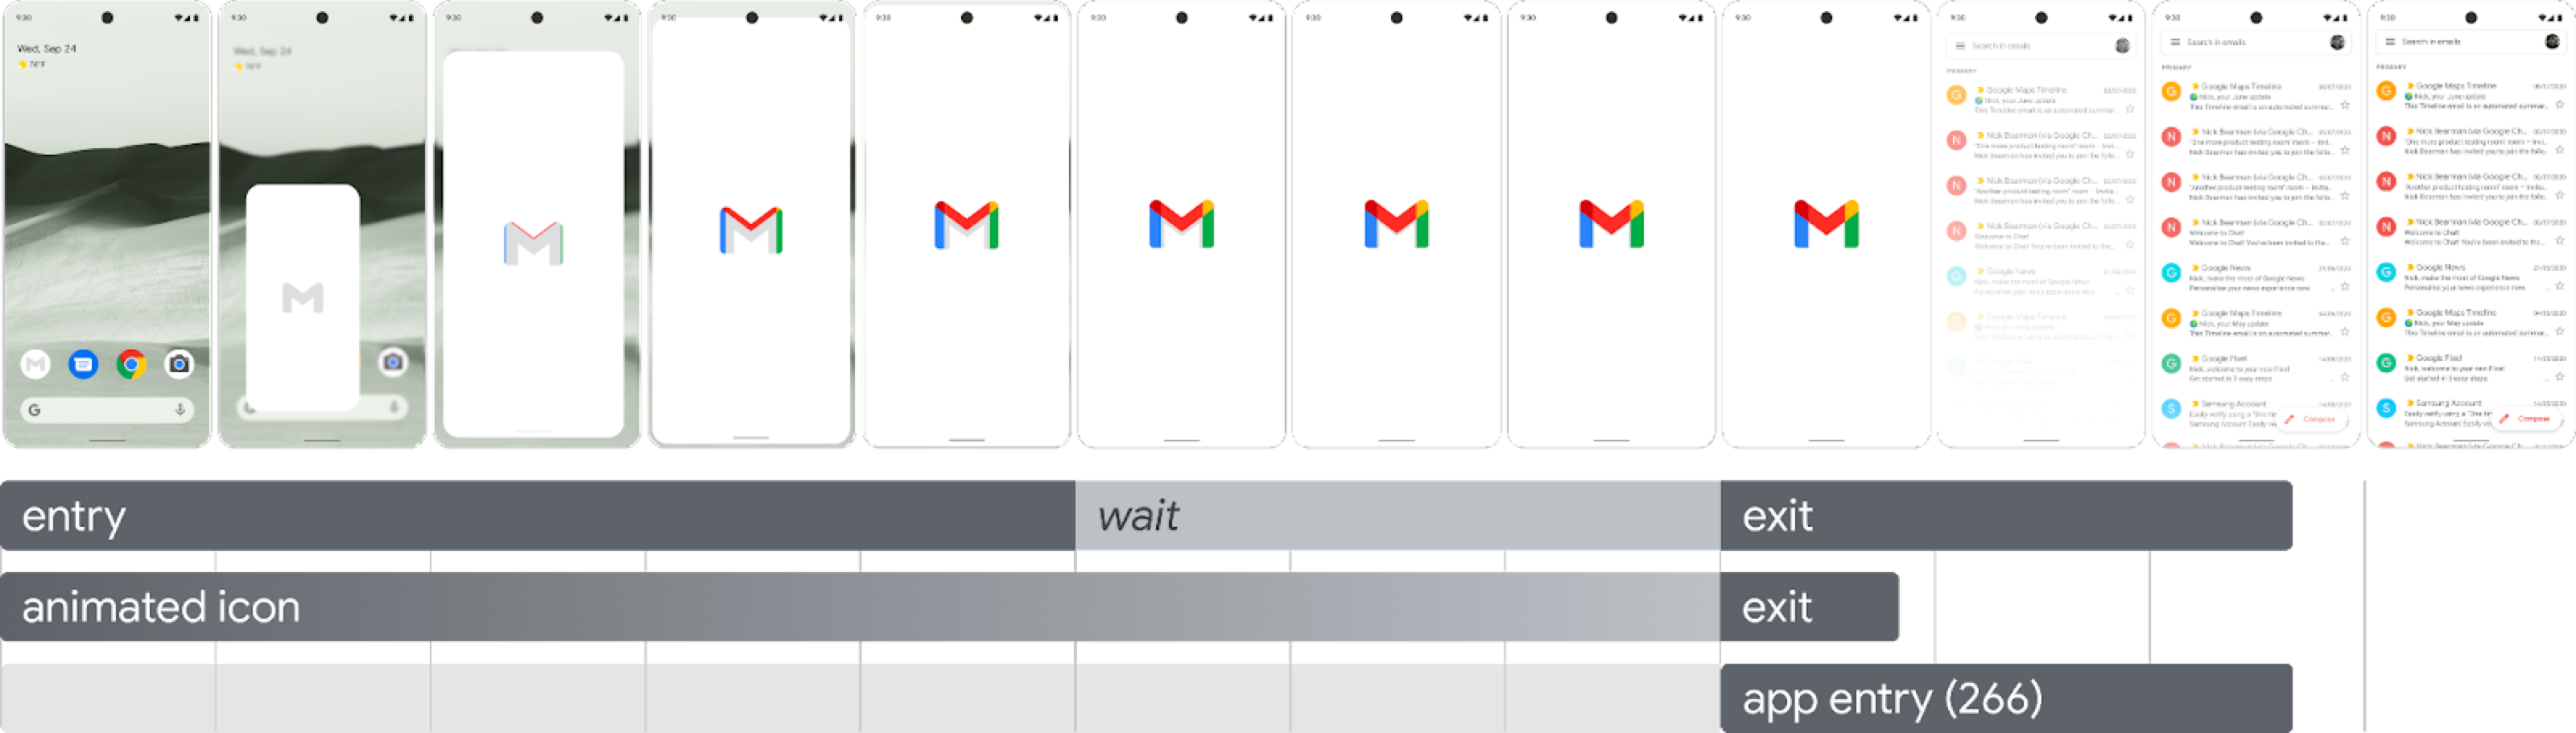 Imagem mostrando a sequência de inicialização em 12 frames consecutivos, começando com o ícone na tela de início sendo tocado e preenchendo a tela conforme ele aumenta